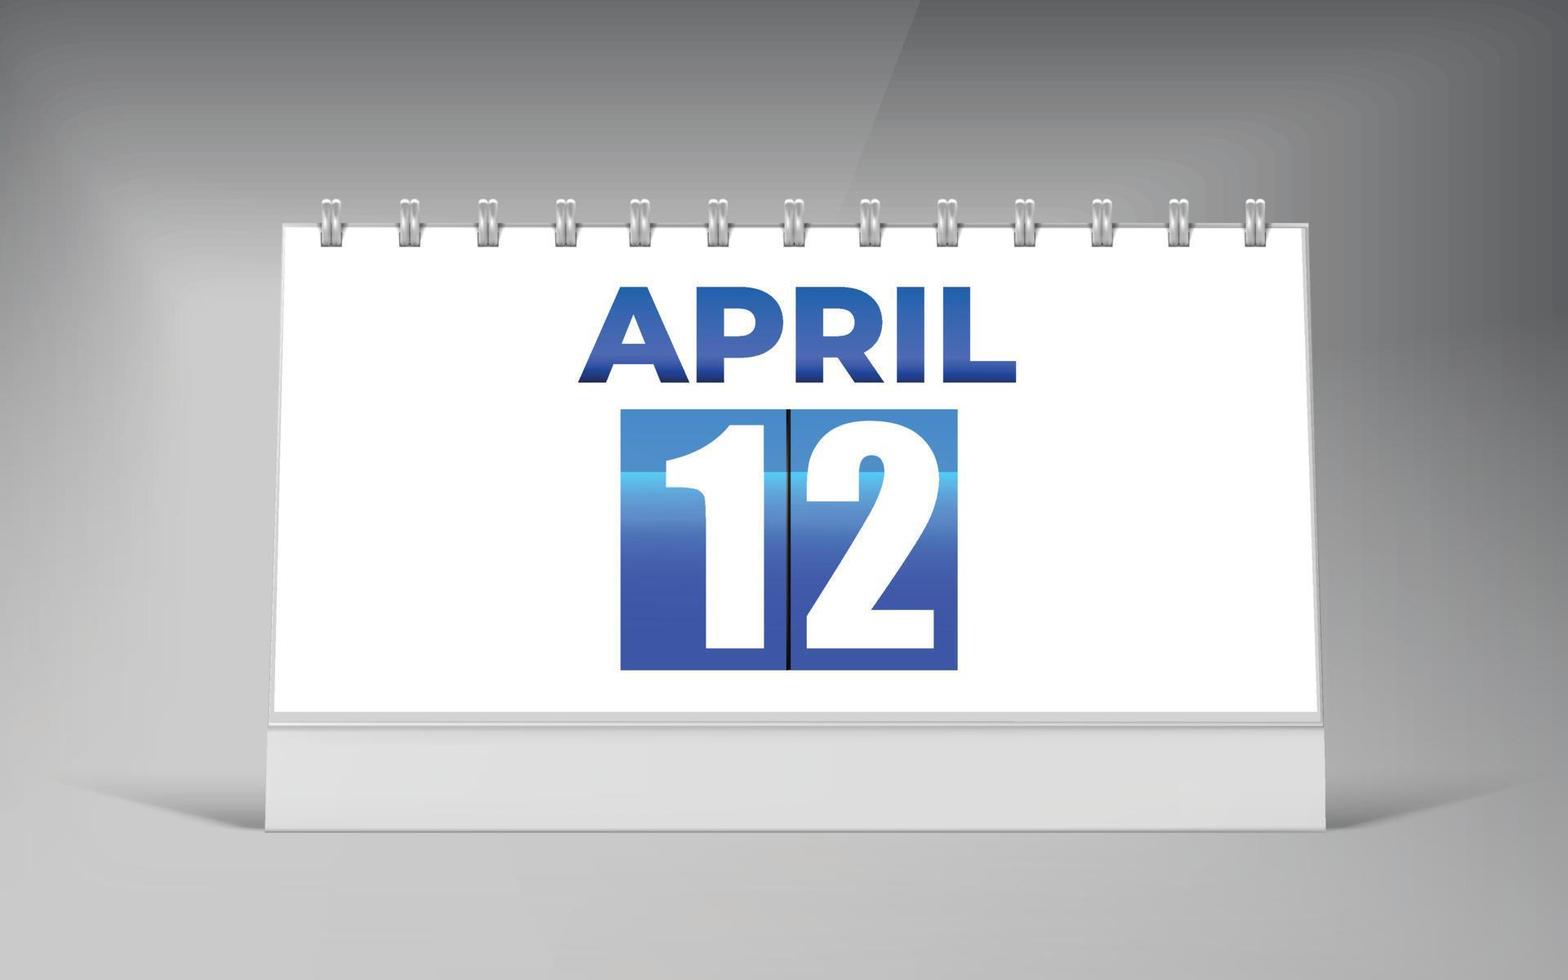 April 12, Desk Calendar Design Template. Single Date Calendar Design. vector